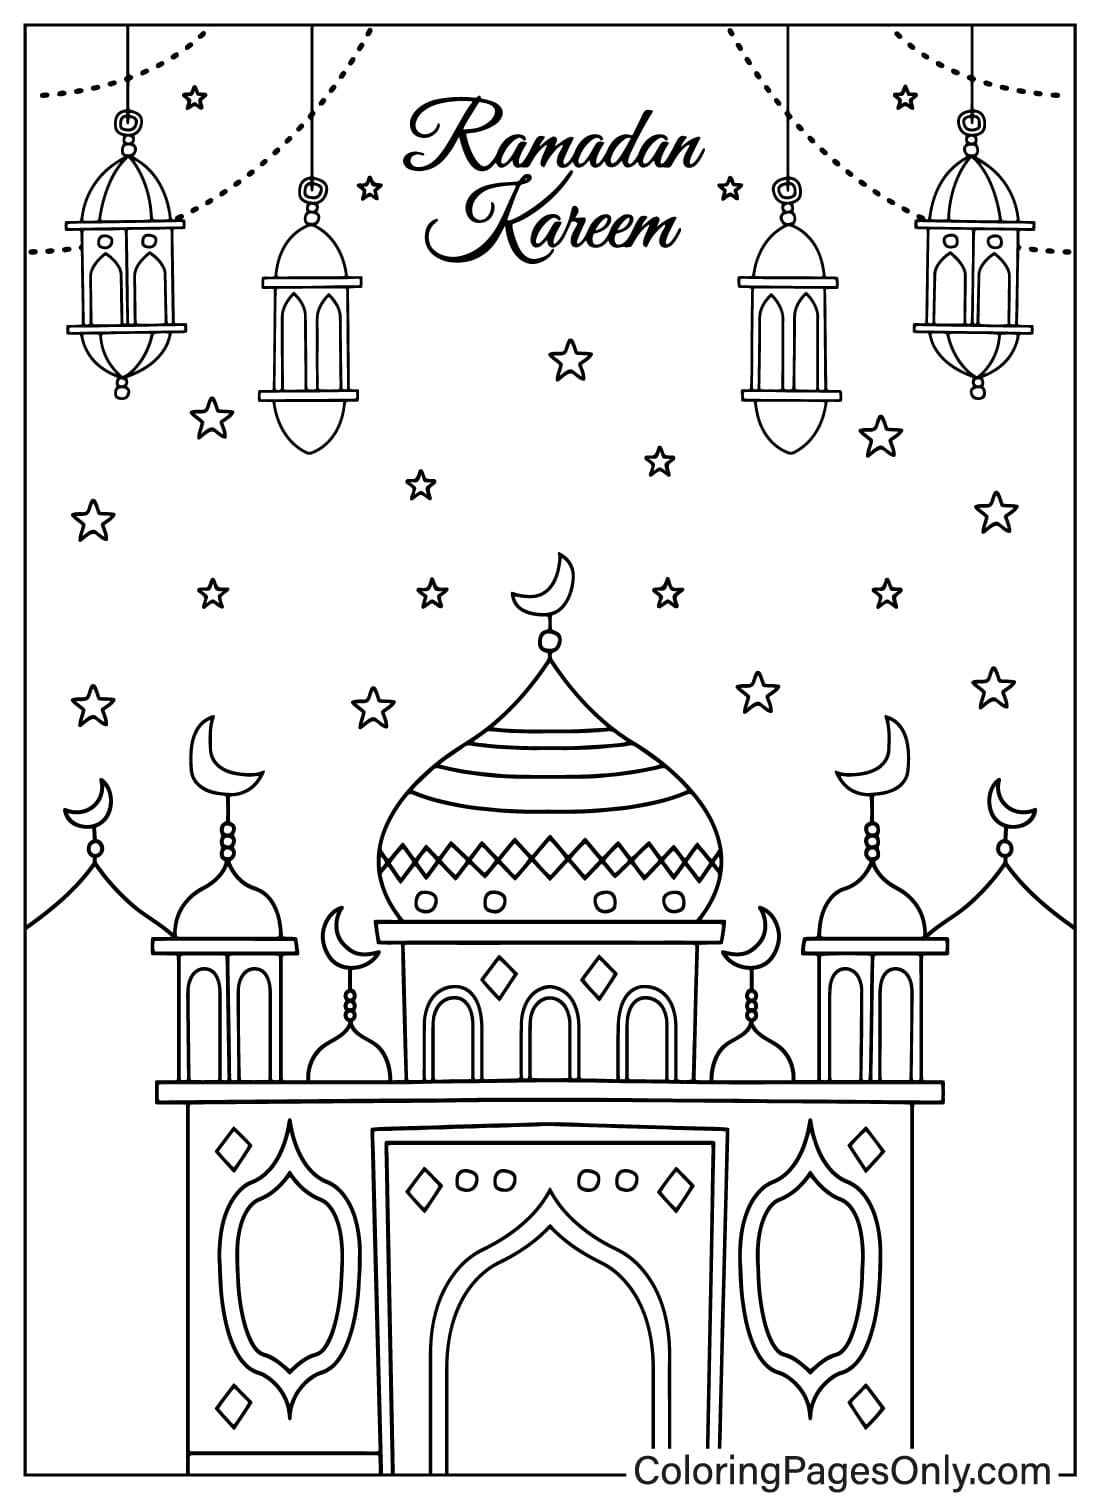 Página para colorear gratis de Ramadán de Ramadán